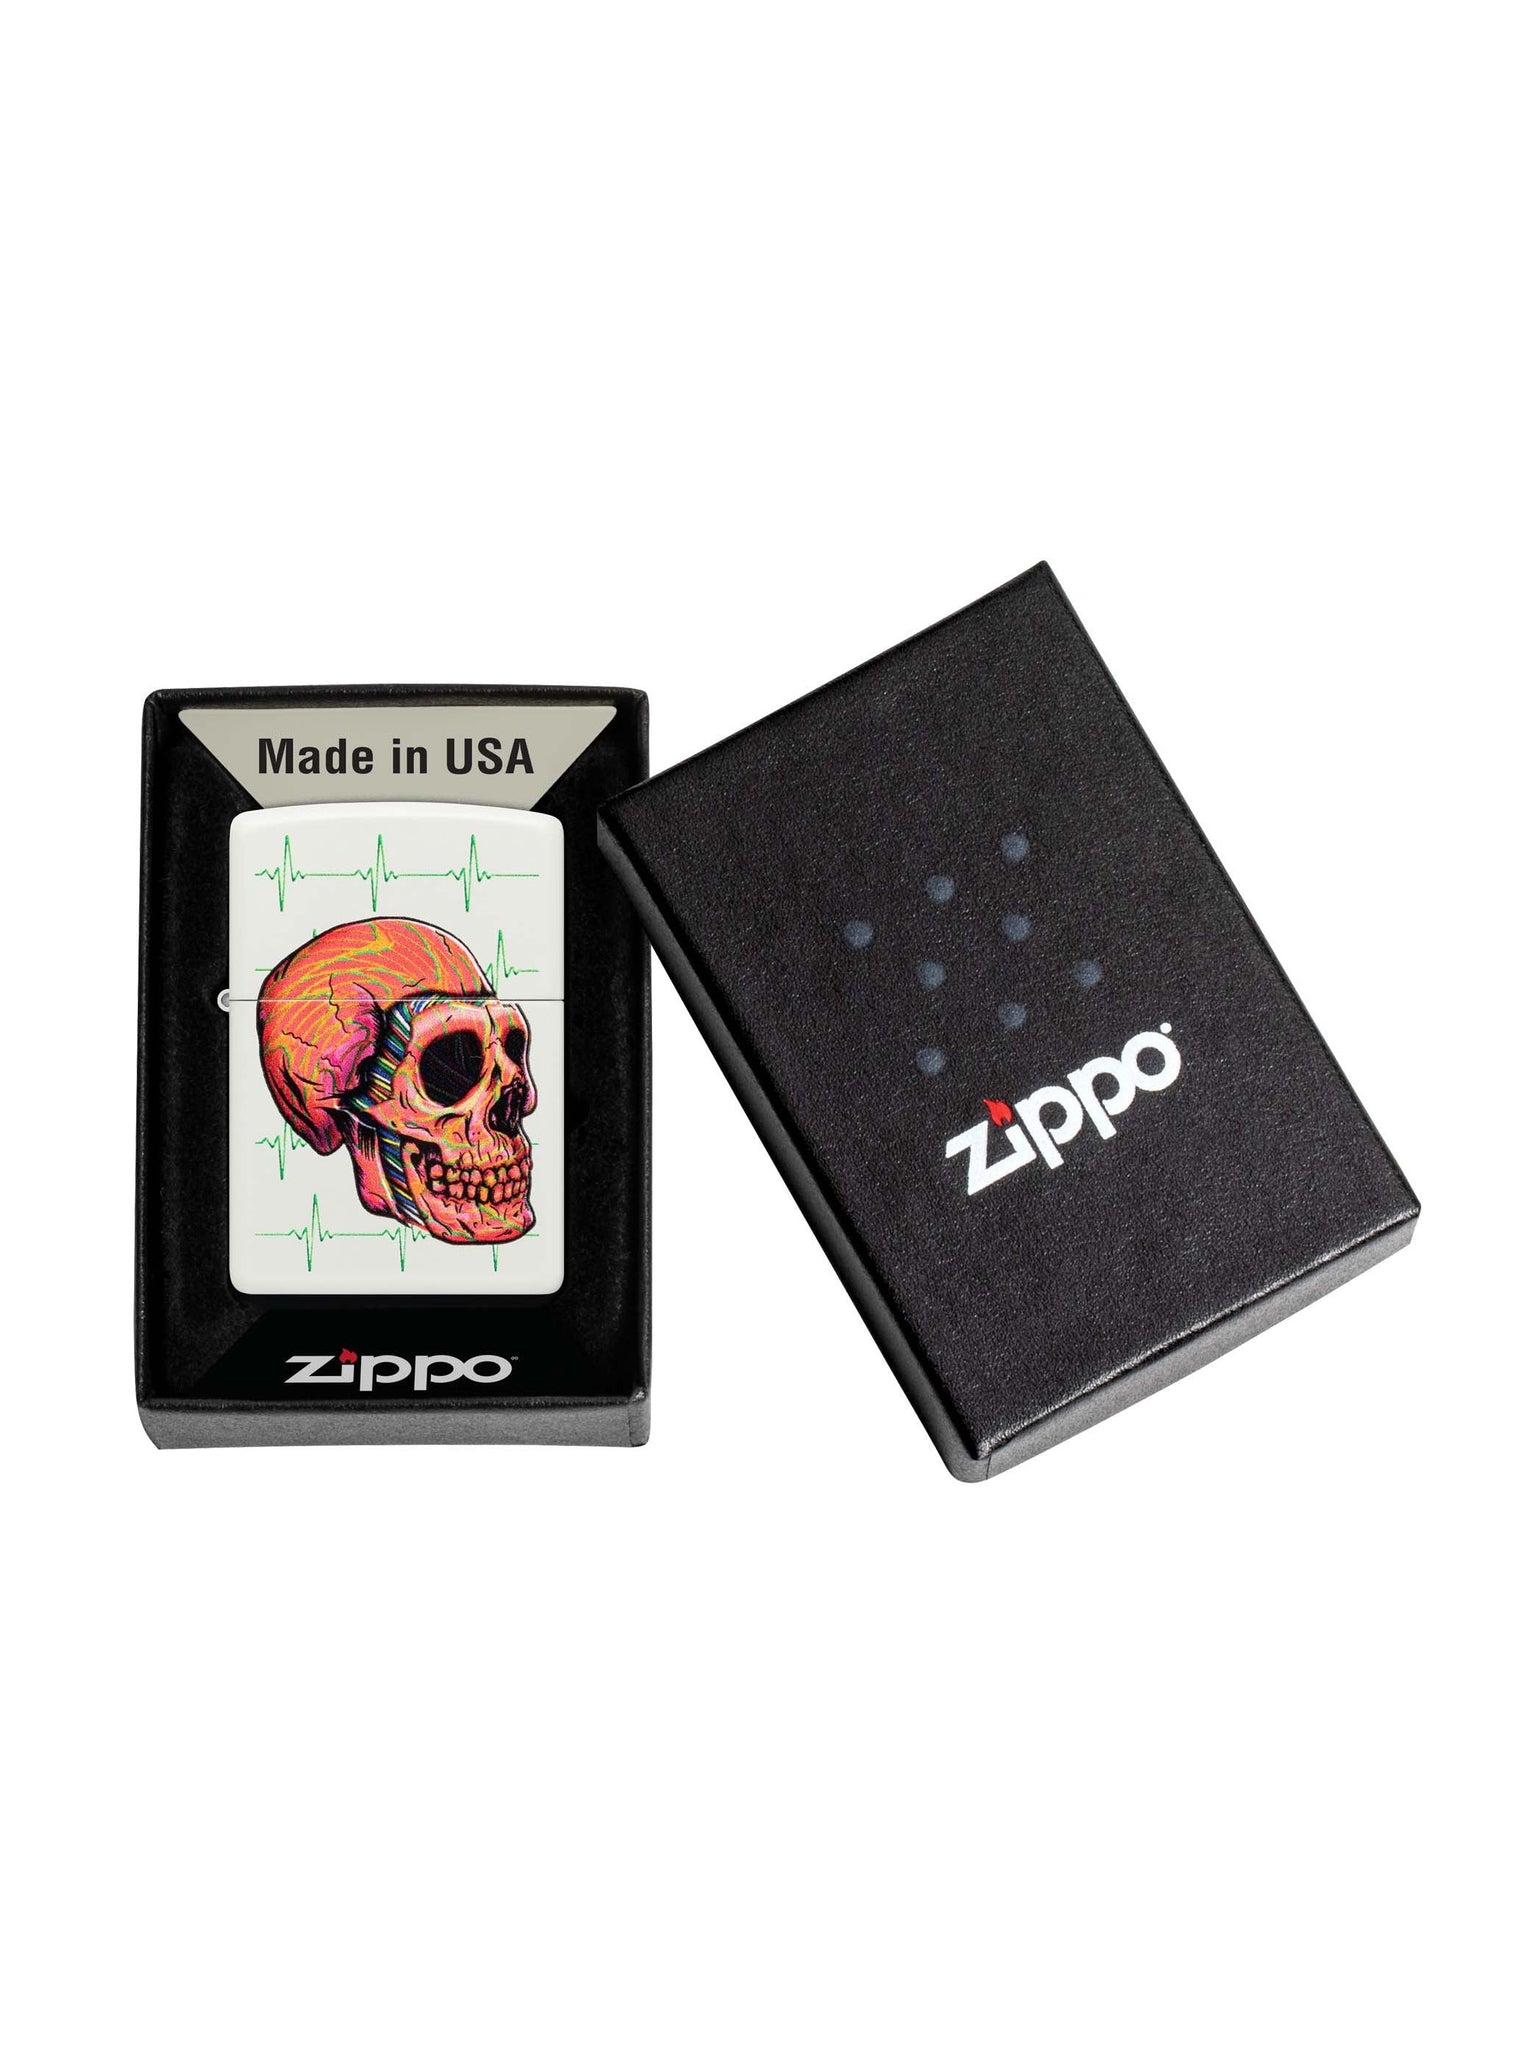 Zippo Lighter: Skull with Heart Rhythms - White Matte 48659